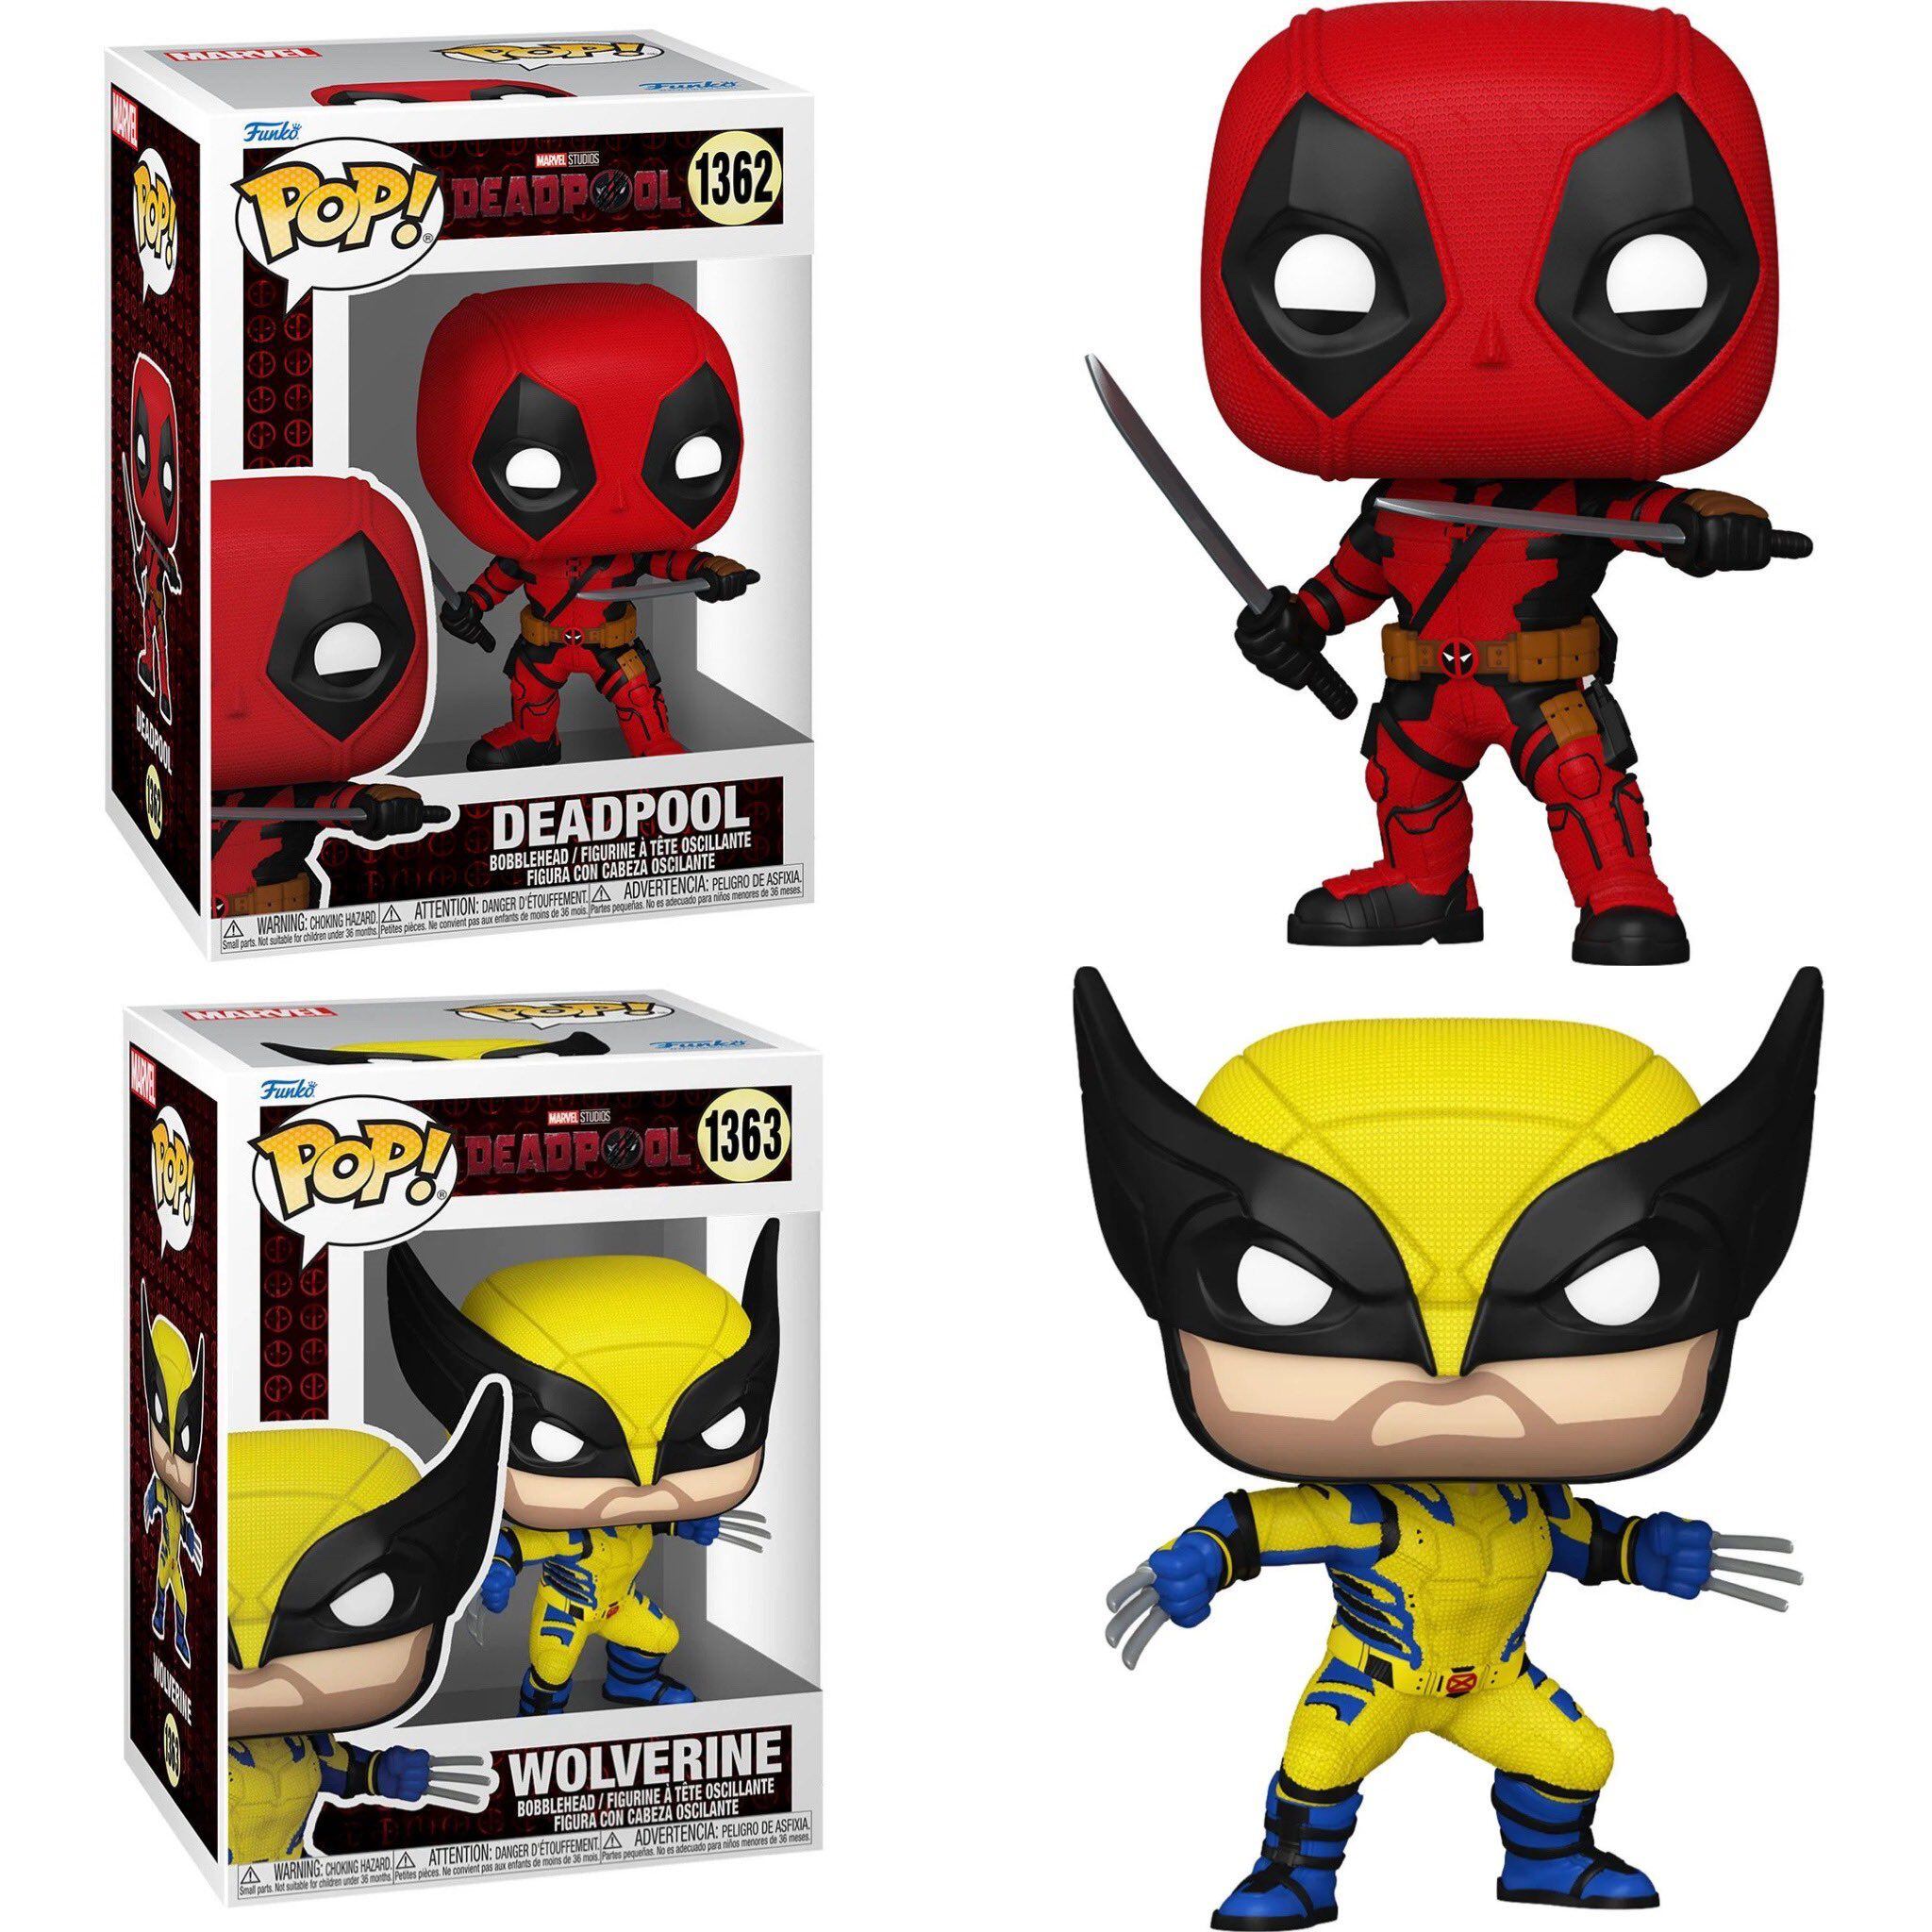 Los nuevos Funko Pop! de Deadpool y Wolverine